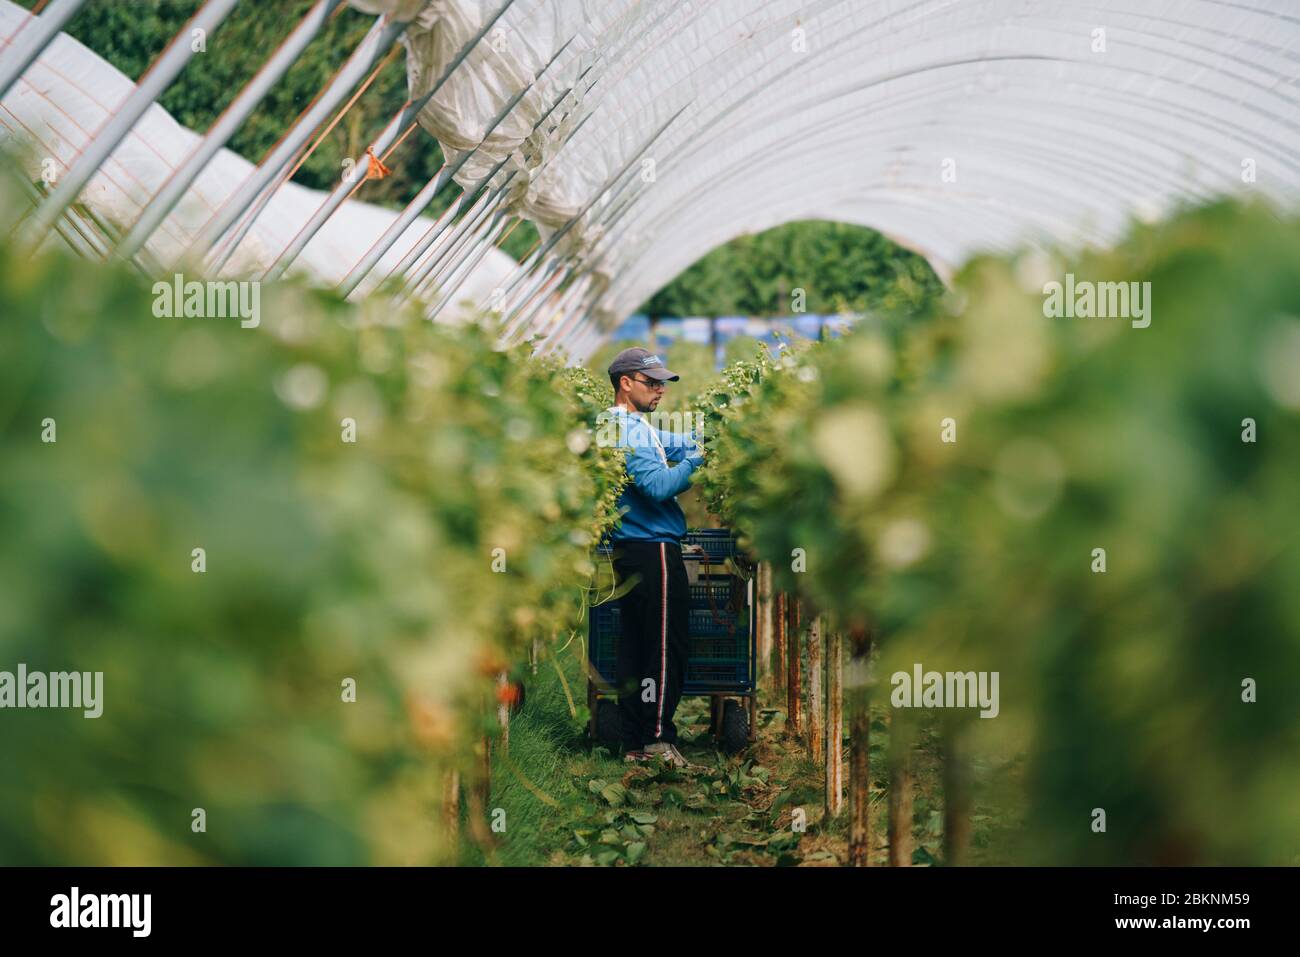 Les travailleurs migrants européens cueillez des fraises dans une grande ferme commerciale qui approvisionne les supermarchés britanniques. Banque D'Images